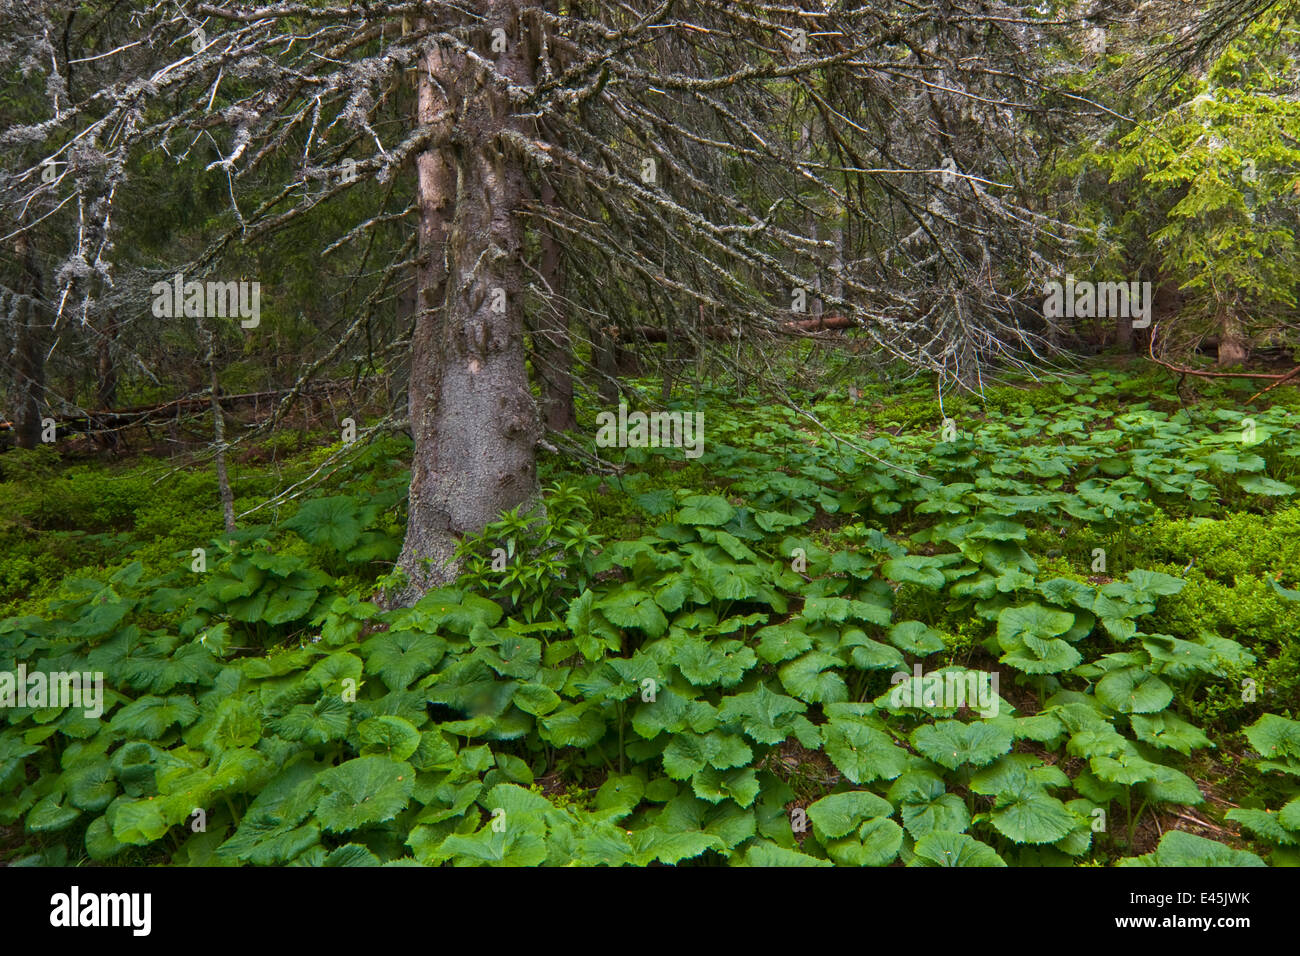 Alten Fichte (Picea Abies) Baum mit Pestwurz (Petasites Albus) wächst unter ihm, westliche Tatra, Karpaten, Slowakei, Juni 2009 Stockfoto